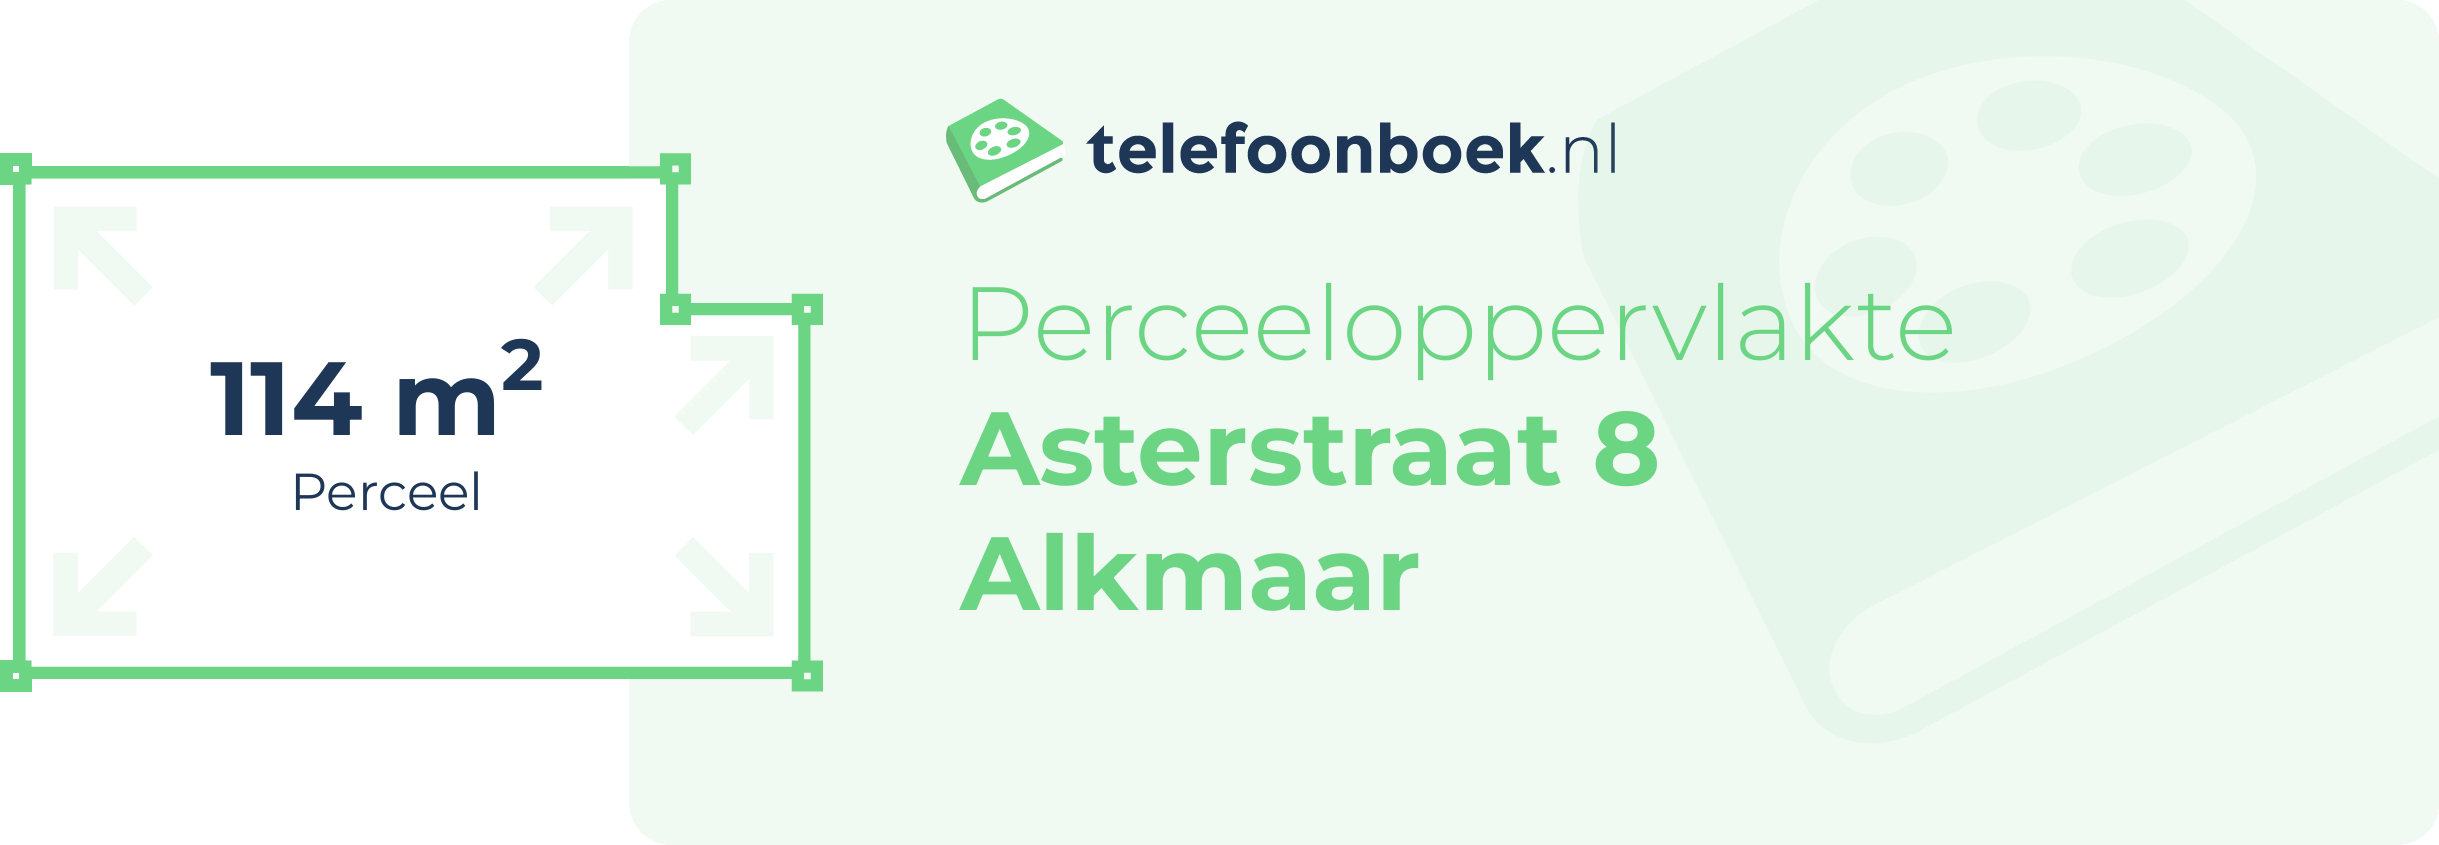 Perceeloppervlakte Asterstraat 8 Alkmaar